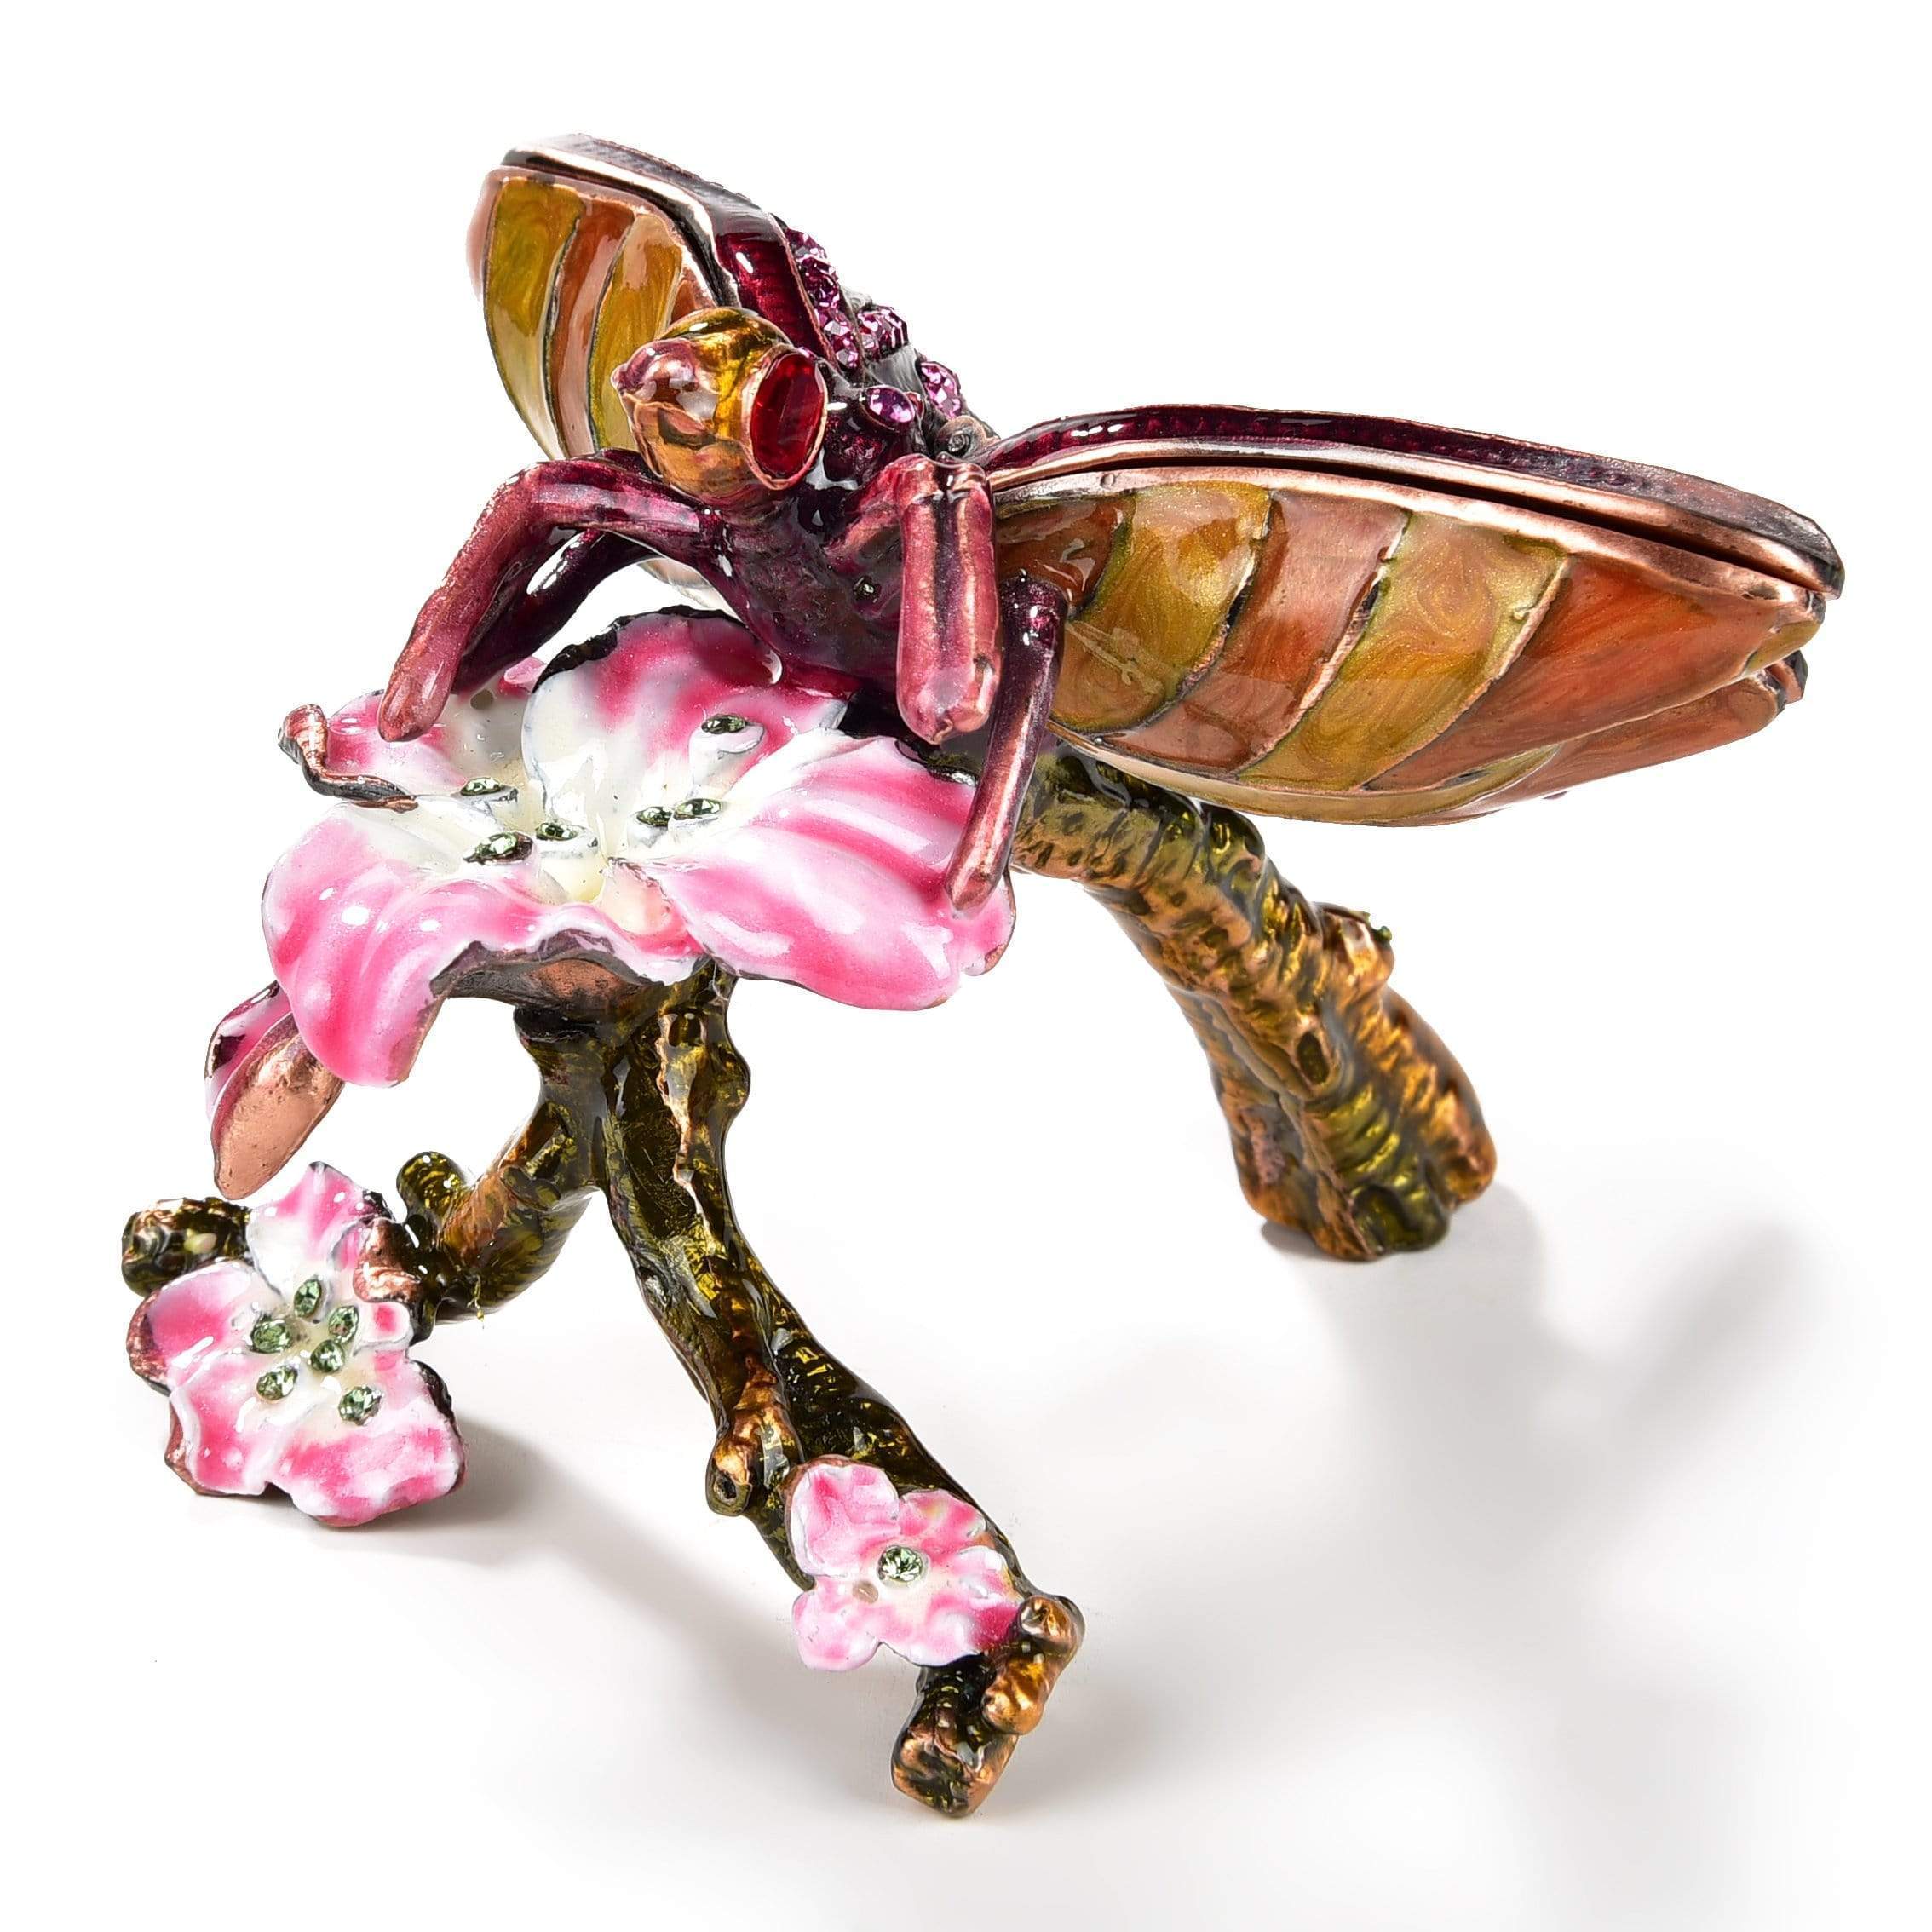 Kalifano Vanity Figurine Pink & Purple Dragonfly Crystal Figurine Keepsake Box SVA-024